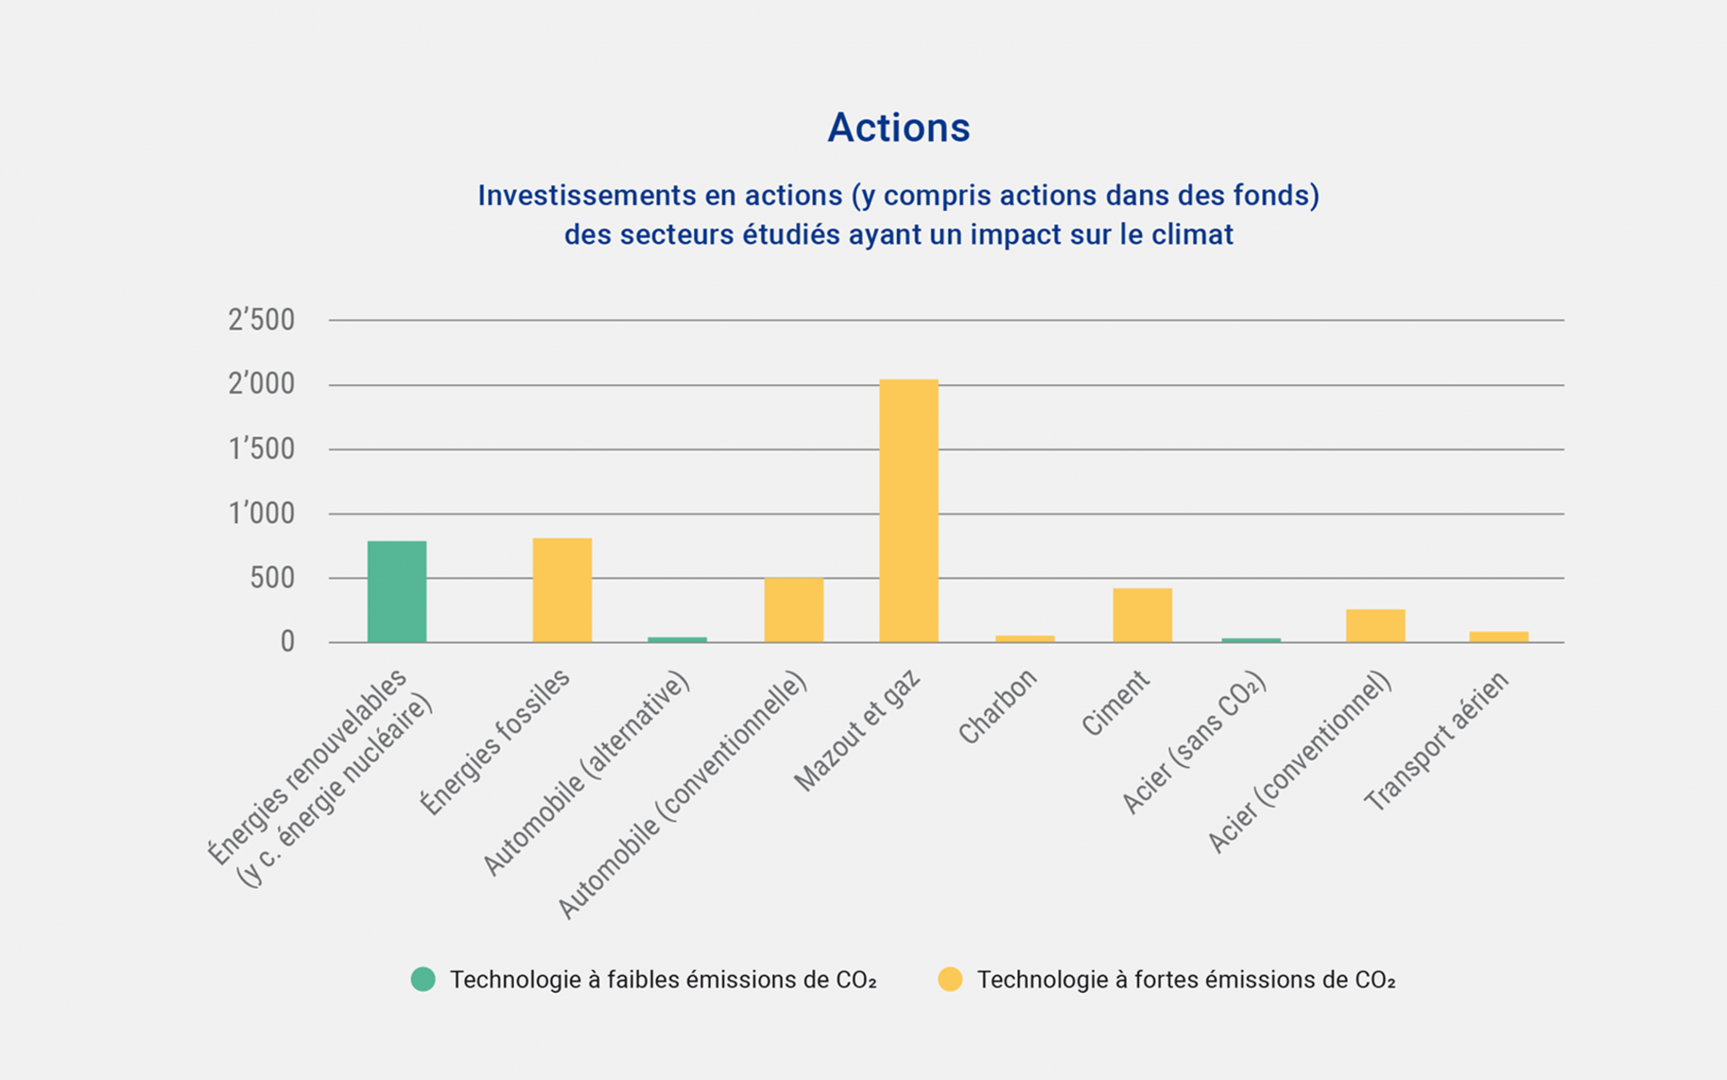 Investissements en actions des secteurs étudiés ayant un impact sur le climat